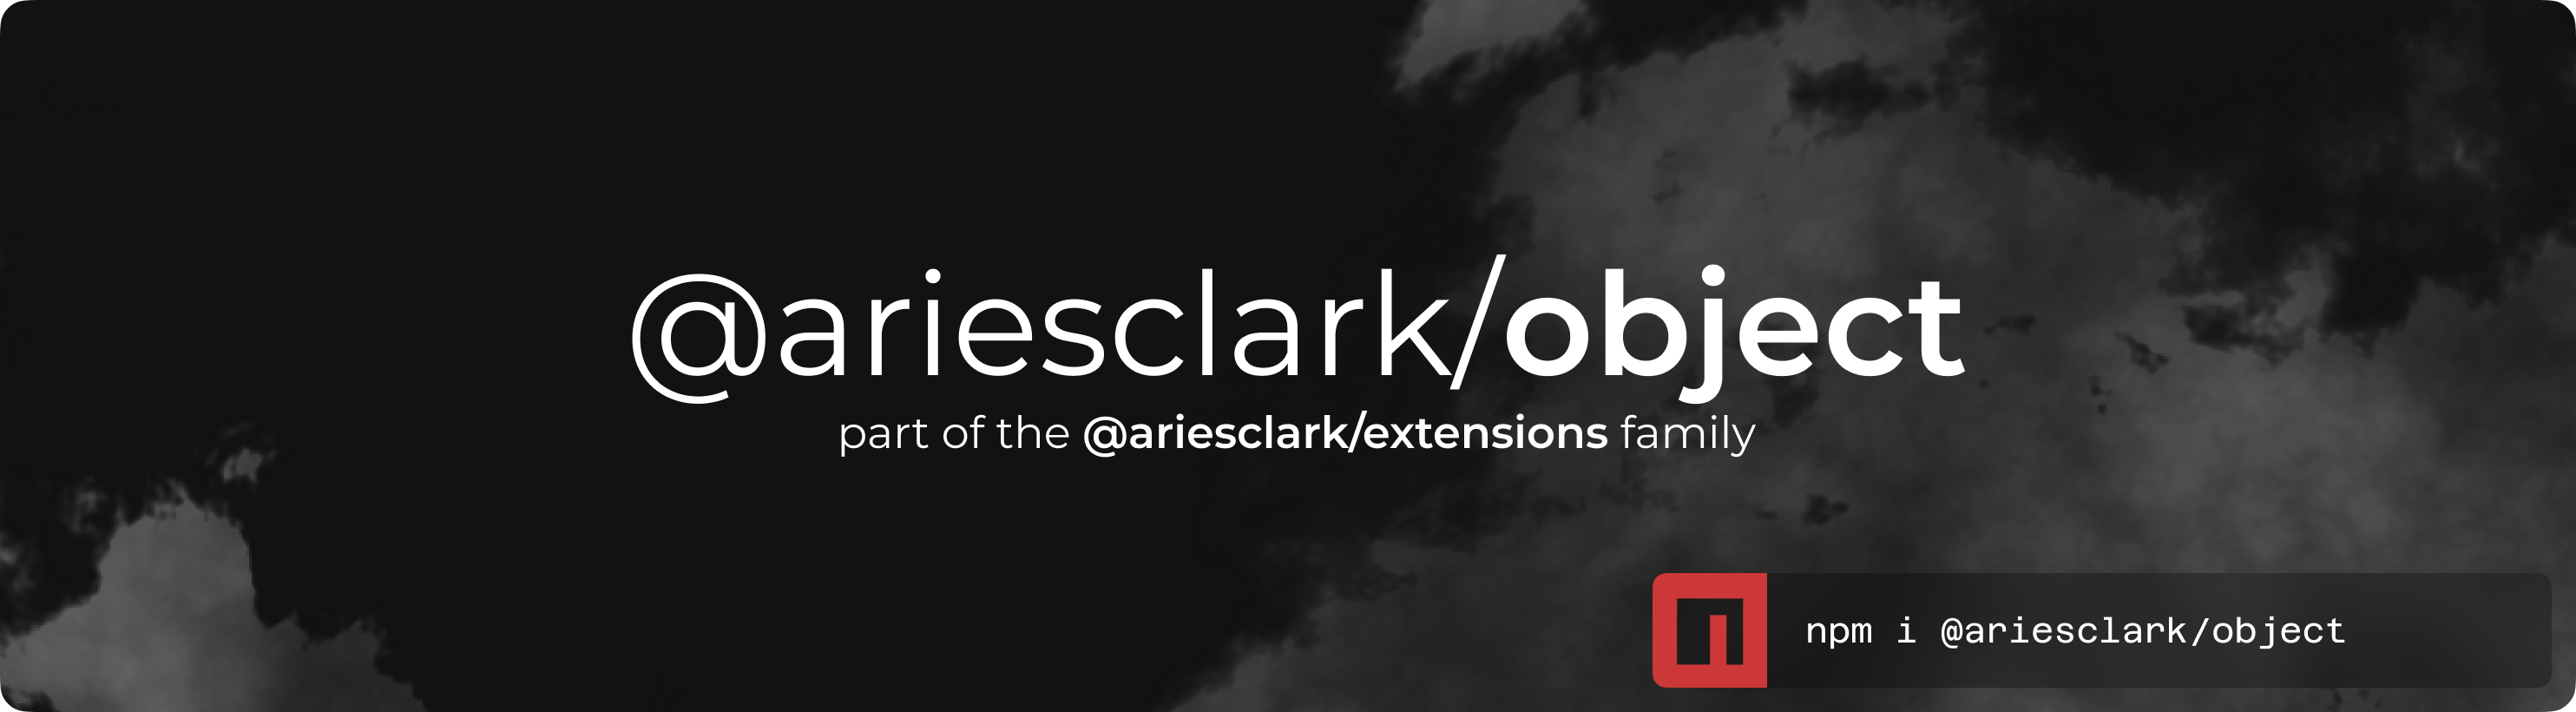 @ariesclark/object logo